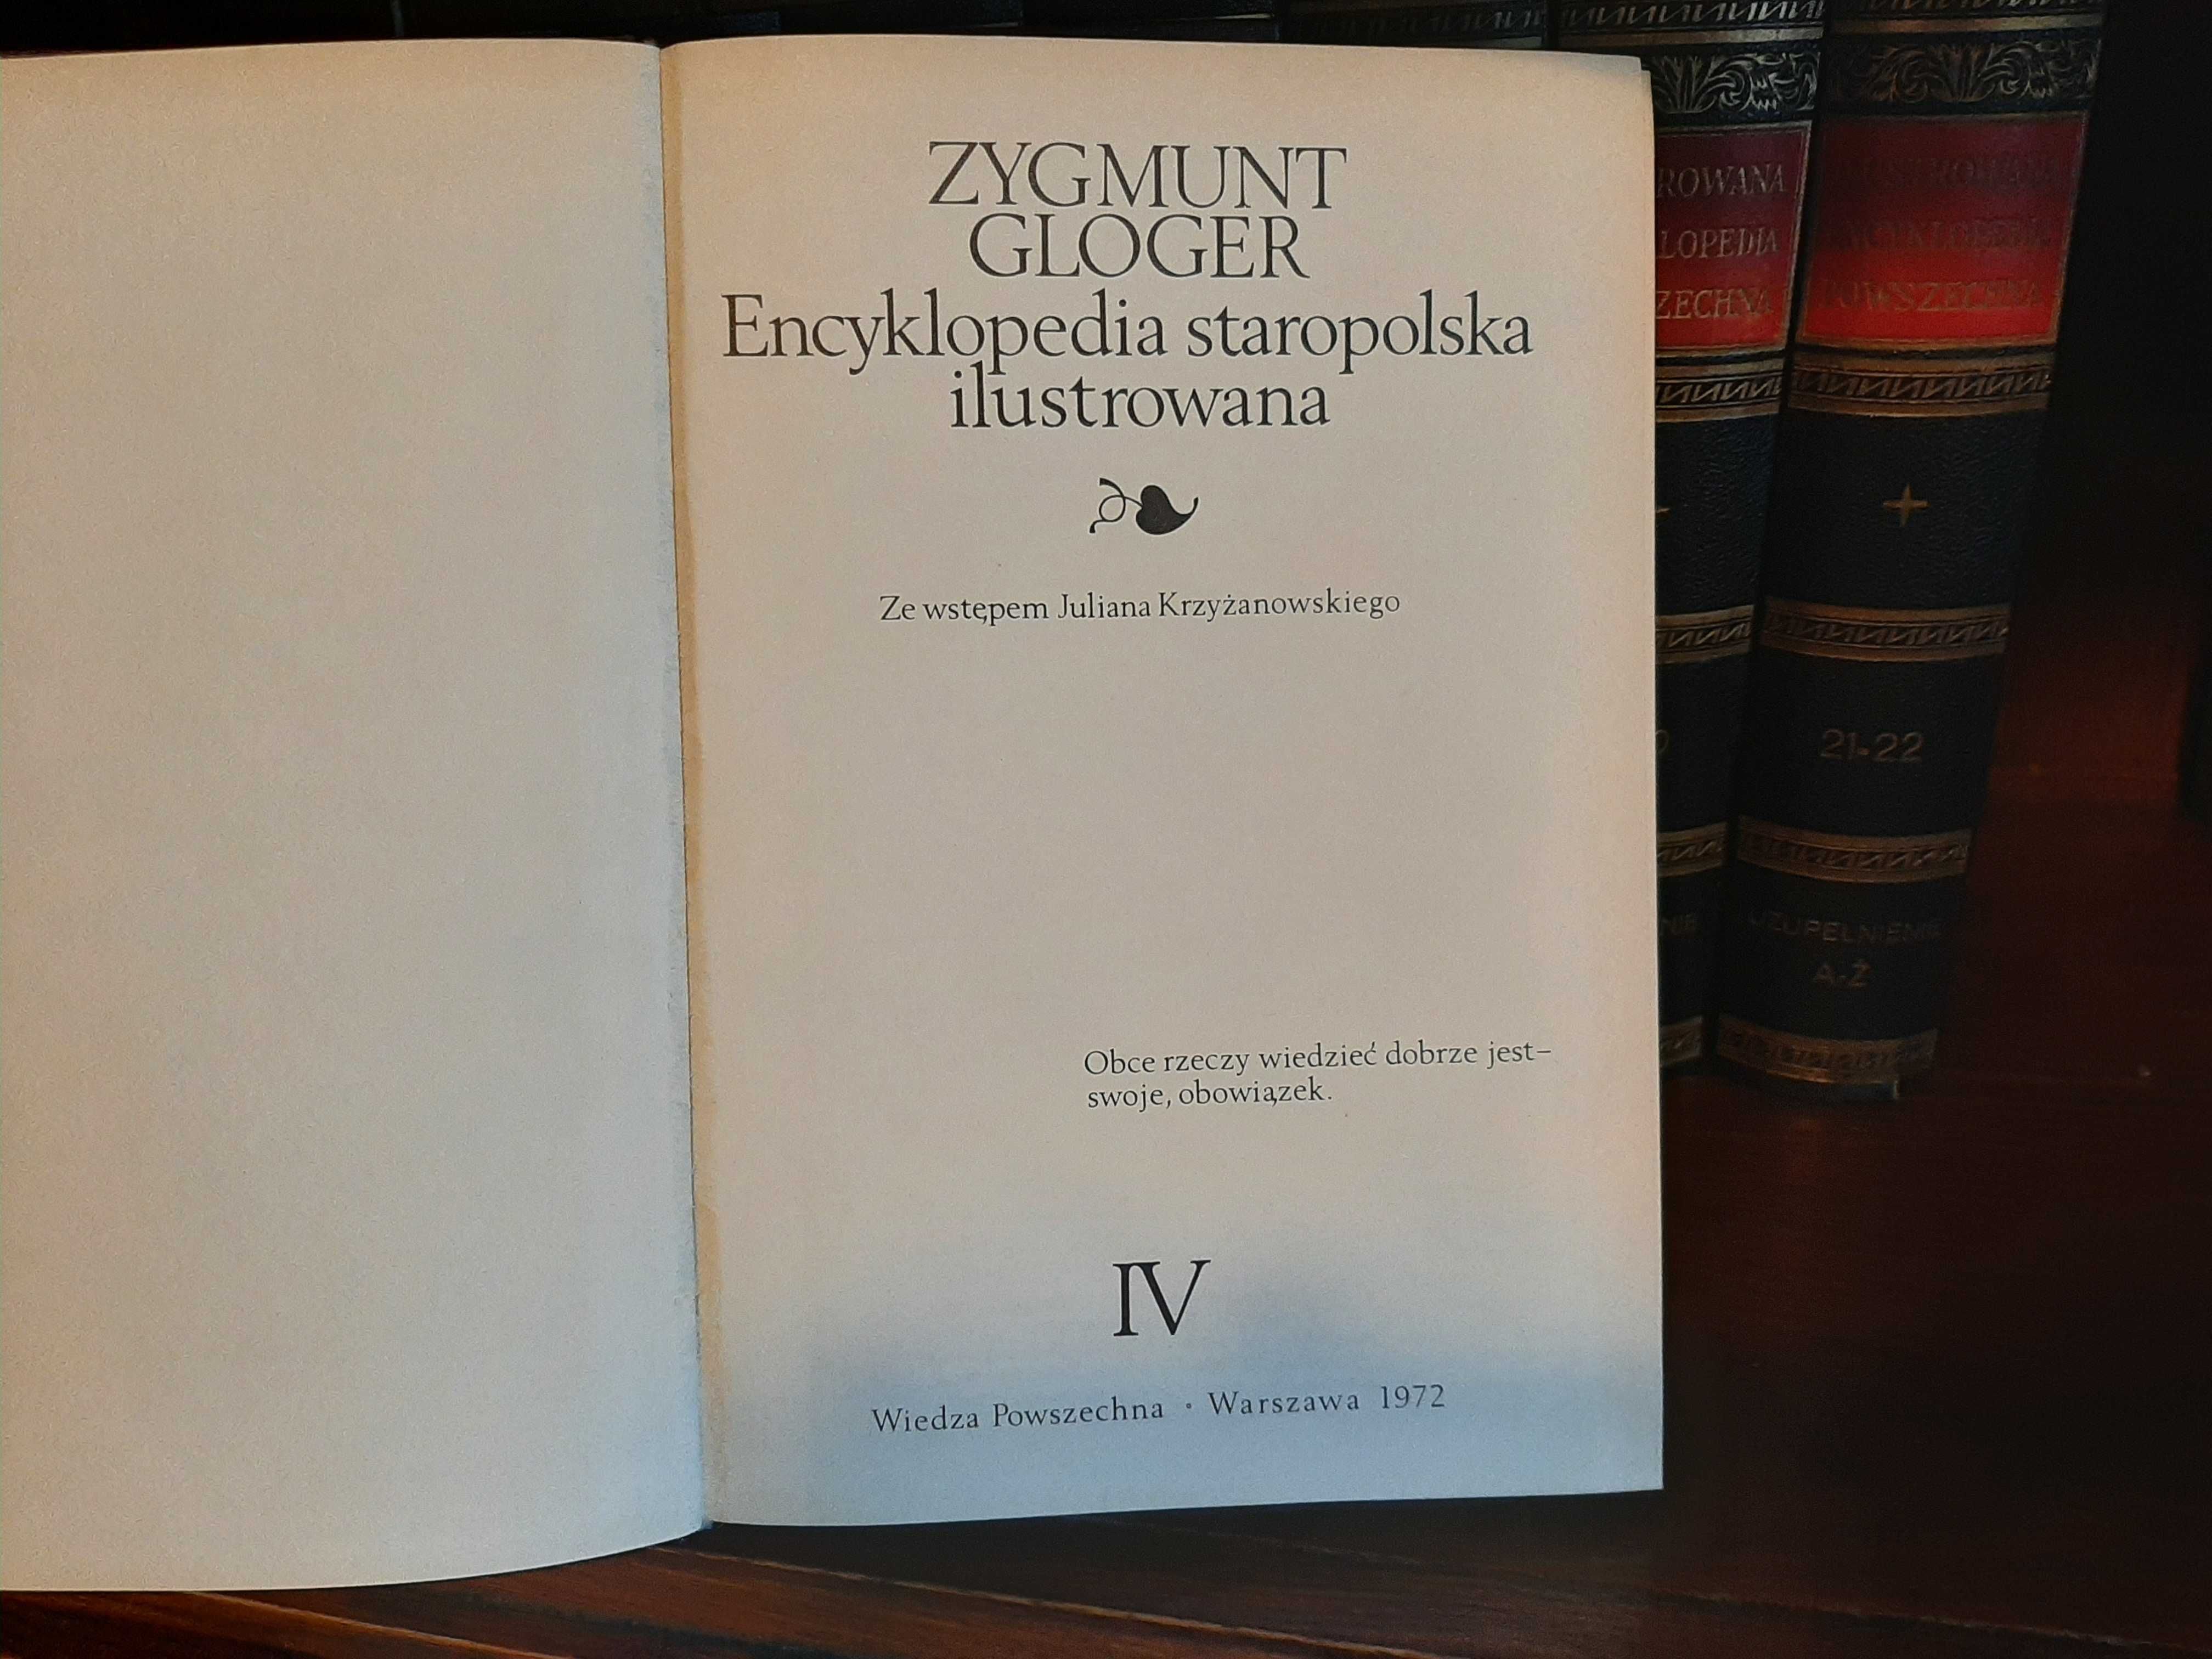 Encyklopedia Staropolska Zygmunt Gloger IV tomy